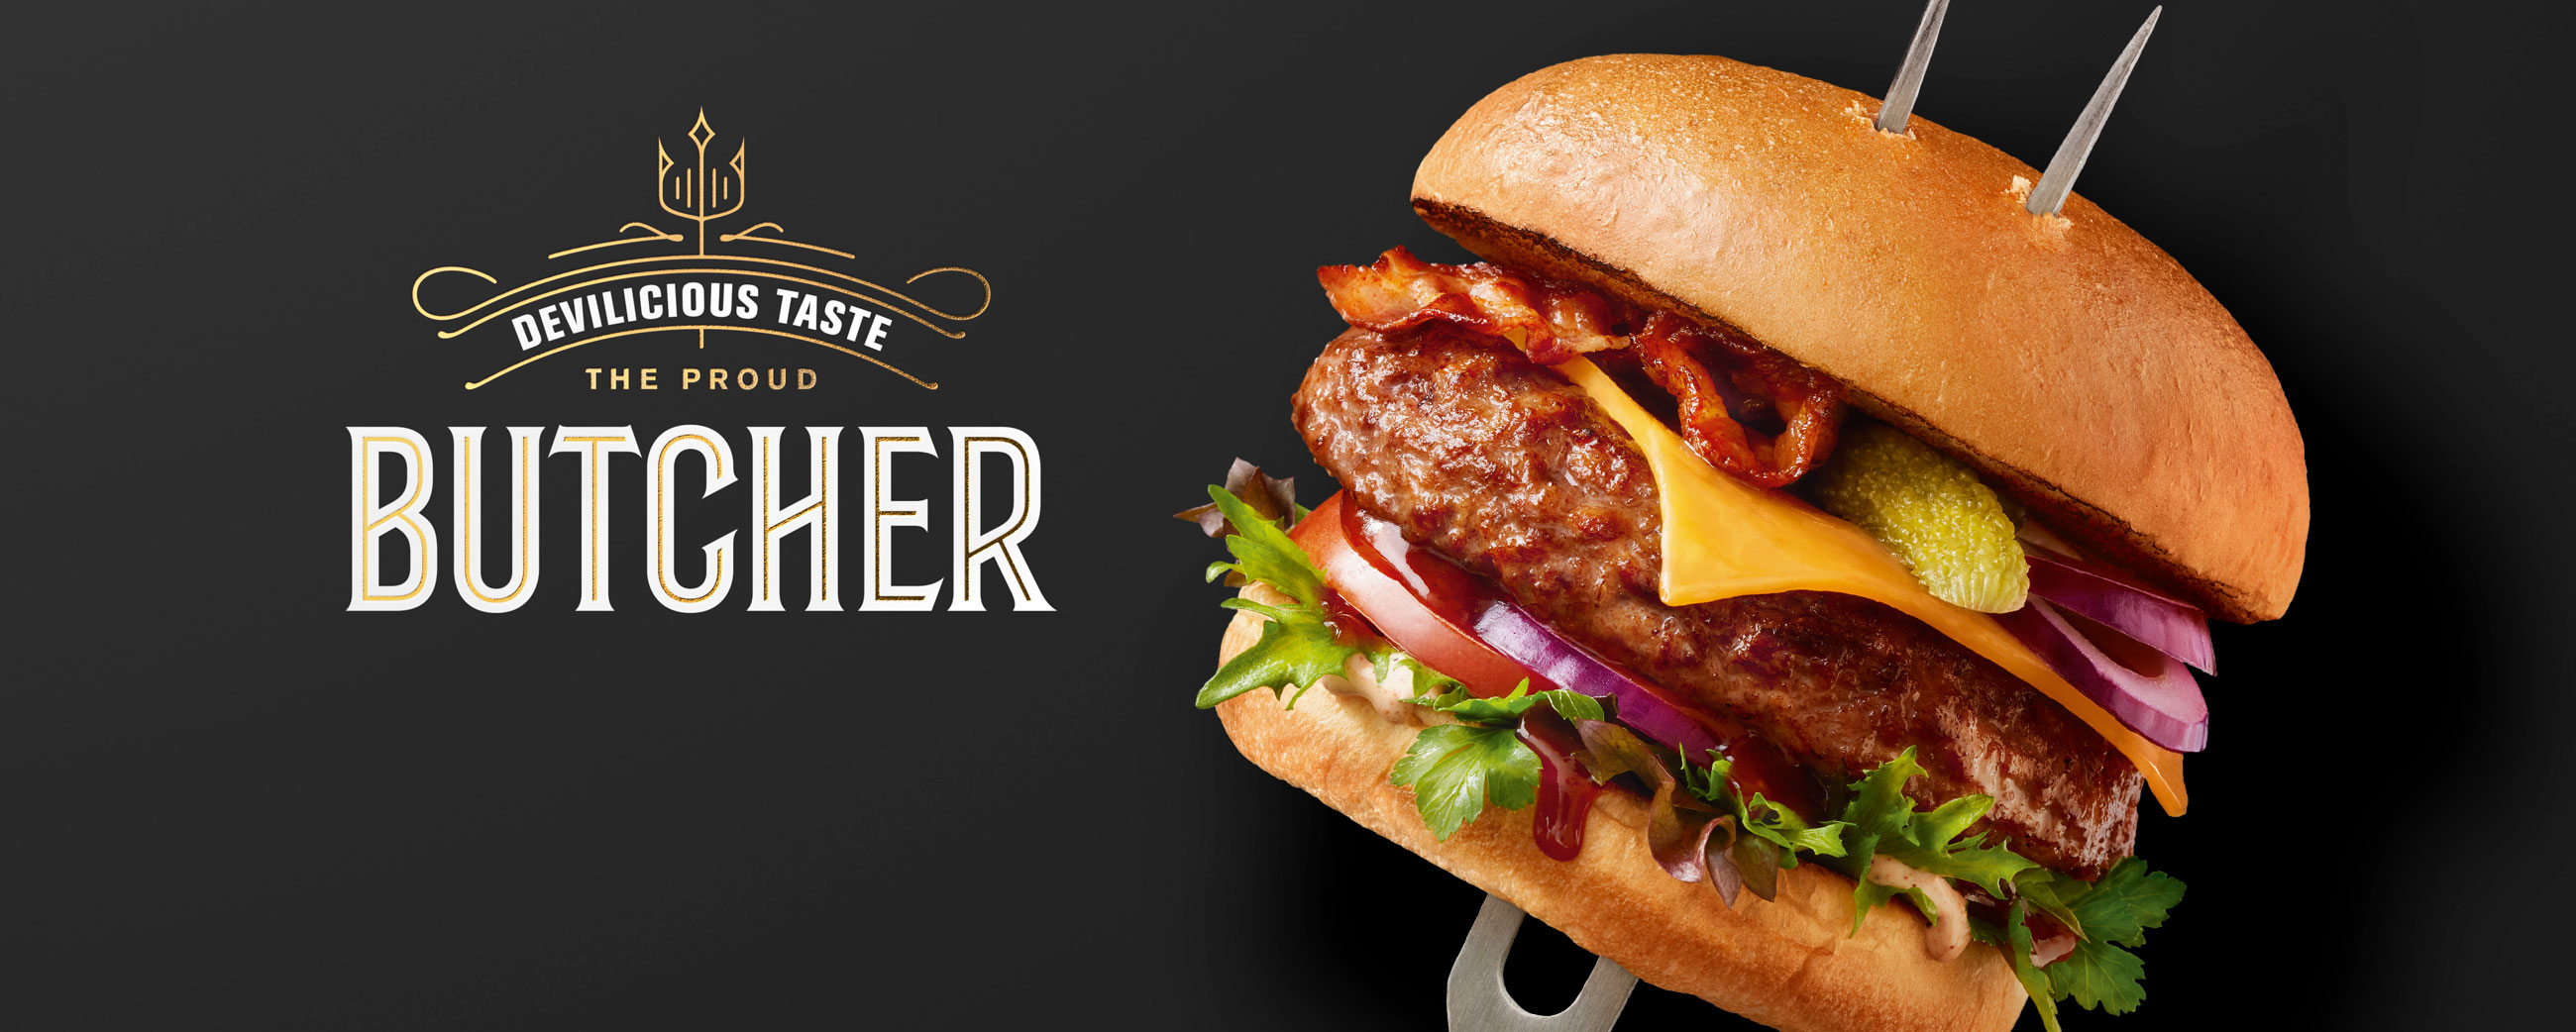 Grilstad Butcher Burger logo. Visuell identitet visual identity.